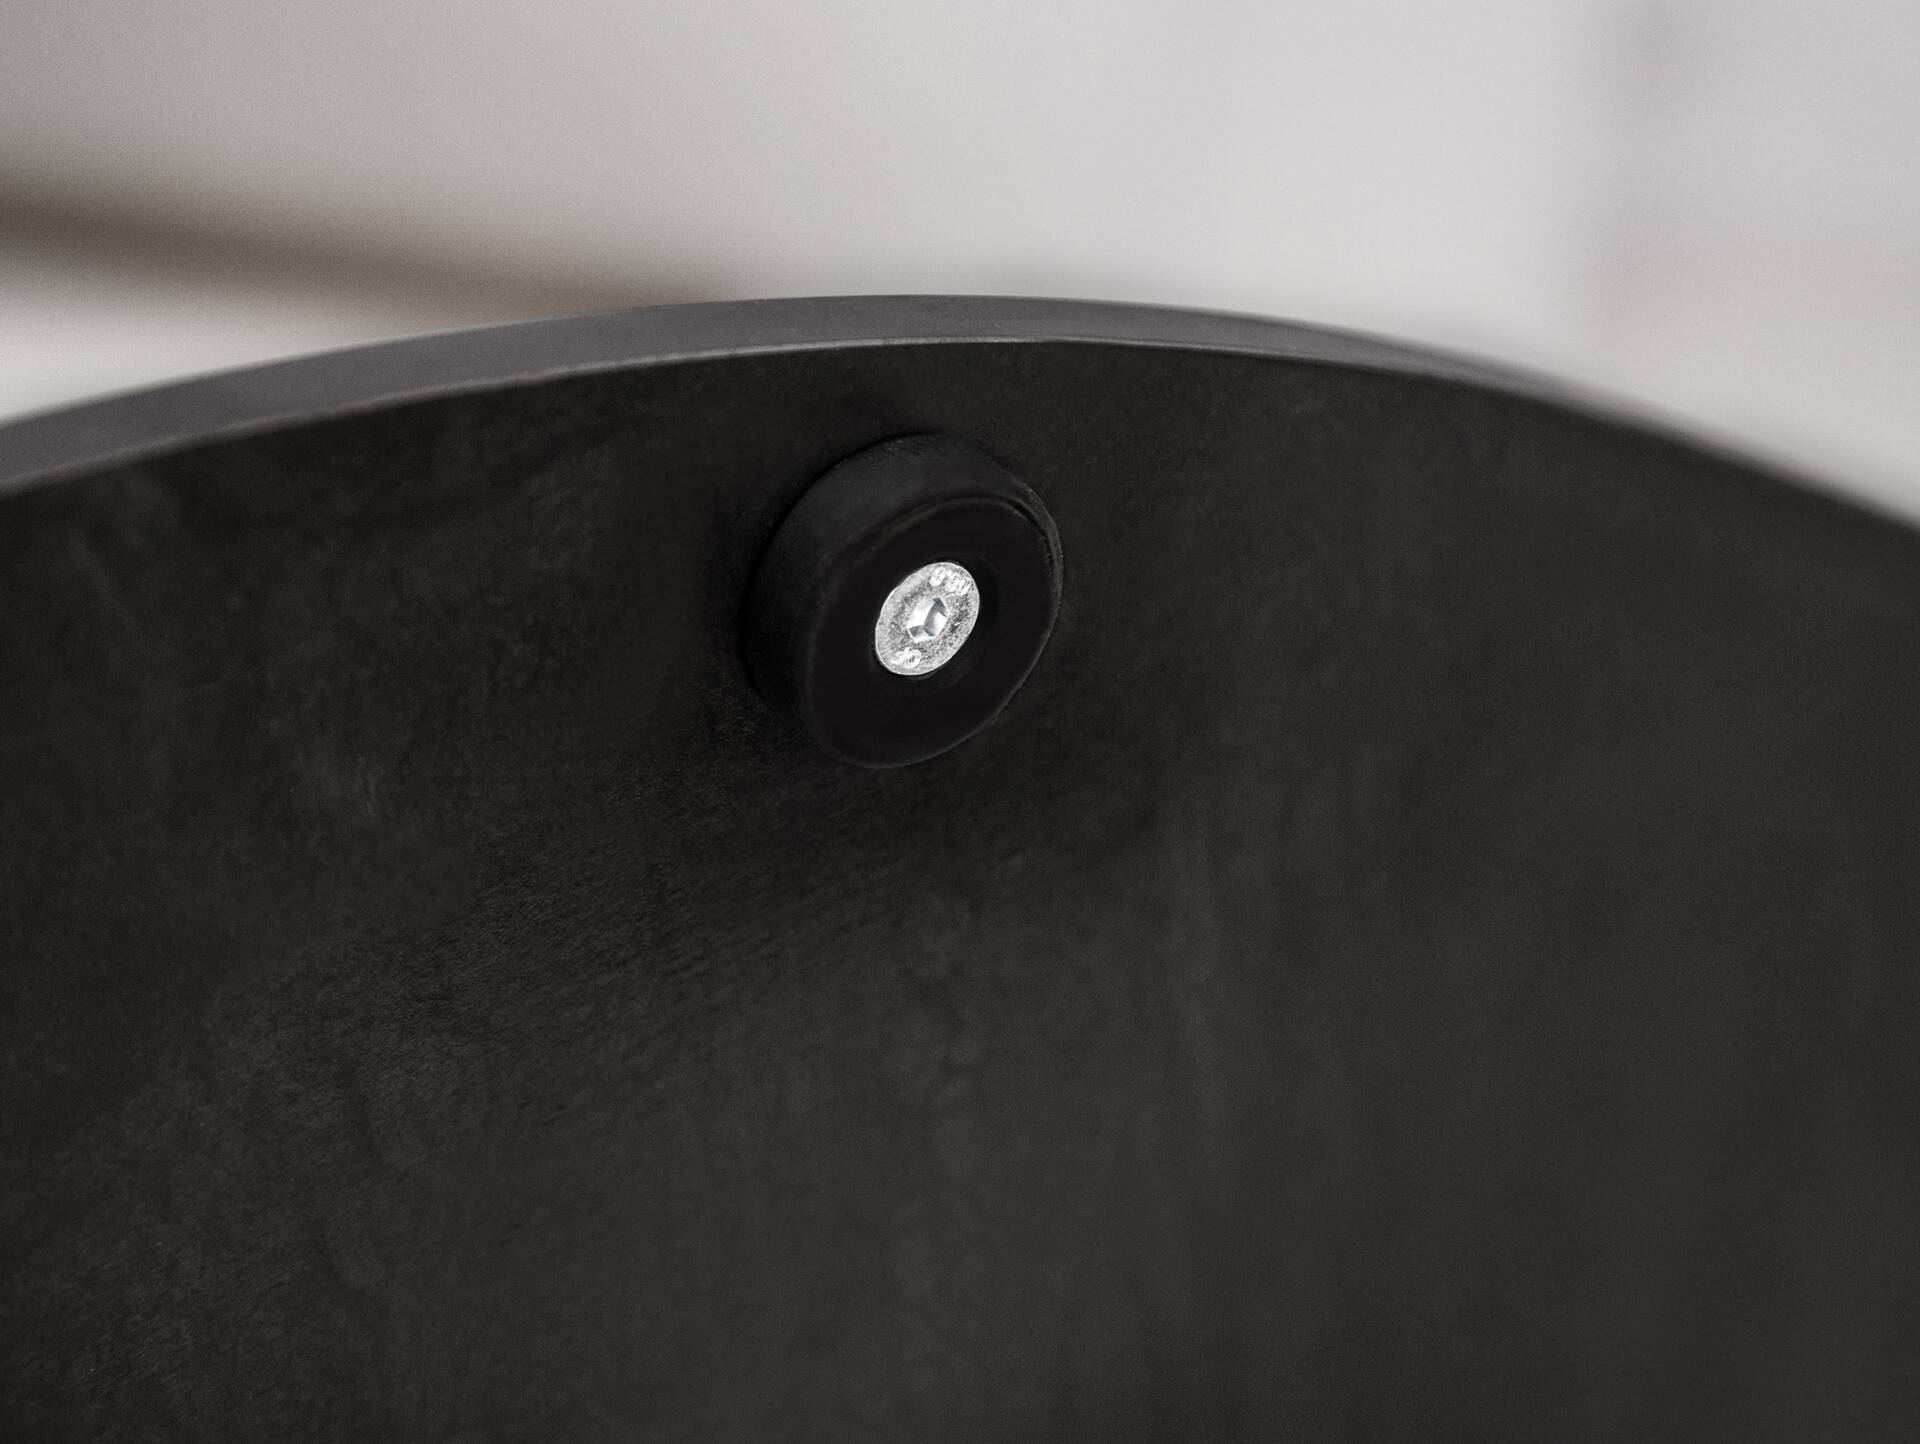 Tischgestell für GASTRO Esstisch rund, Material Stahl, schwarz 70 cm